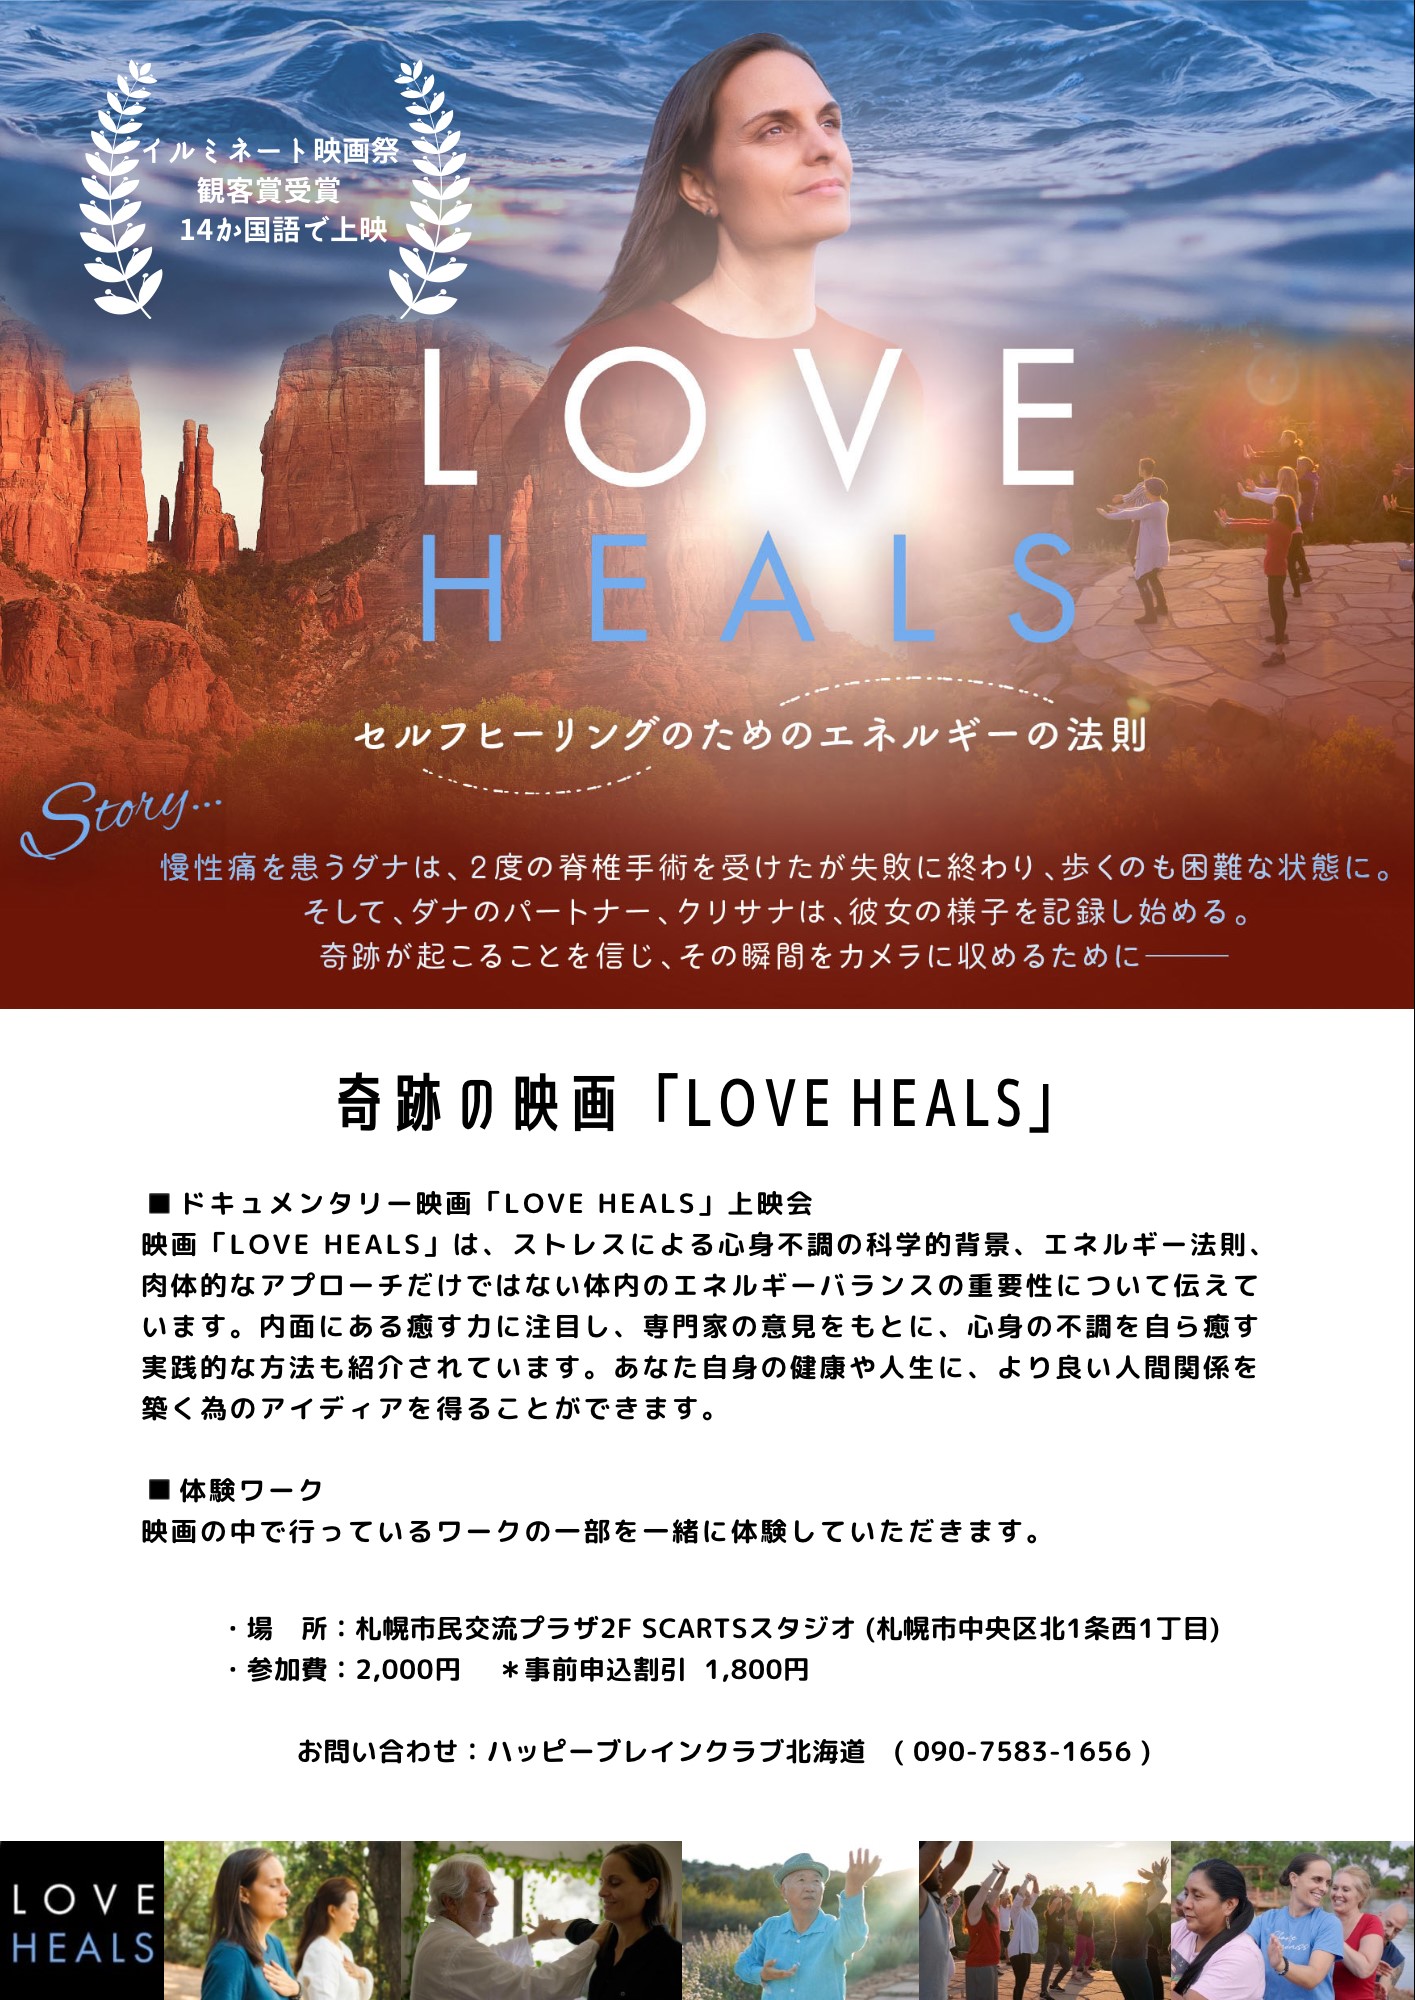 映画「LOVE HEALS」上映会  with 体験ワークショップイメージ